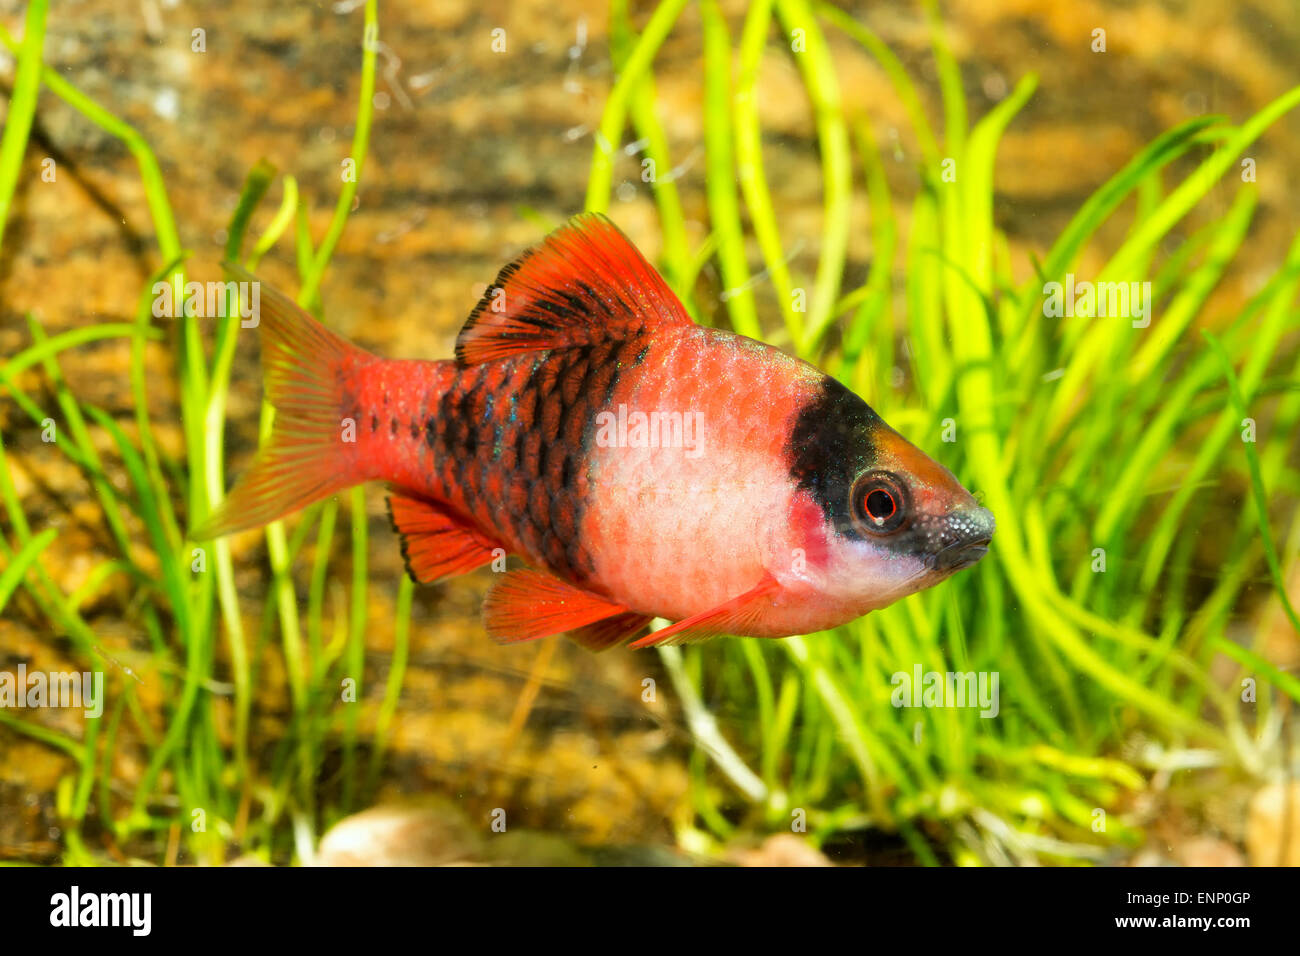 Nice aquarium fish from genus Puntius. Stock Photo